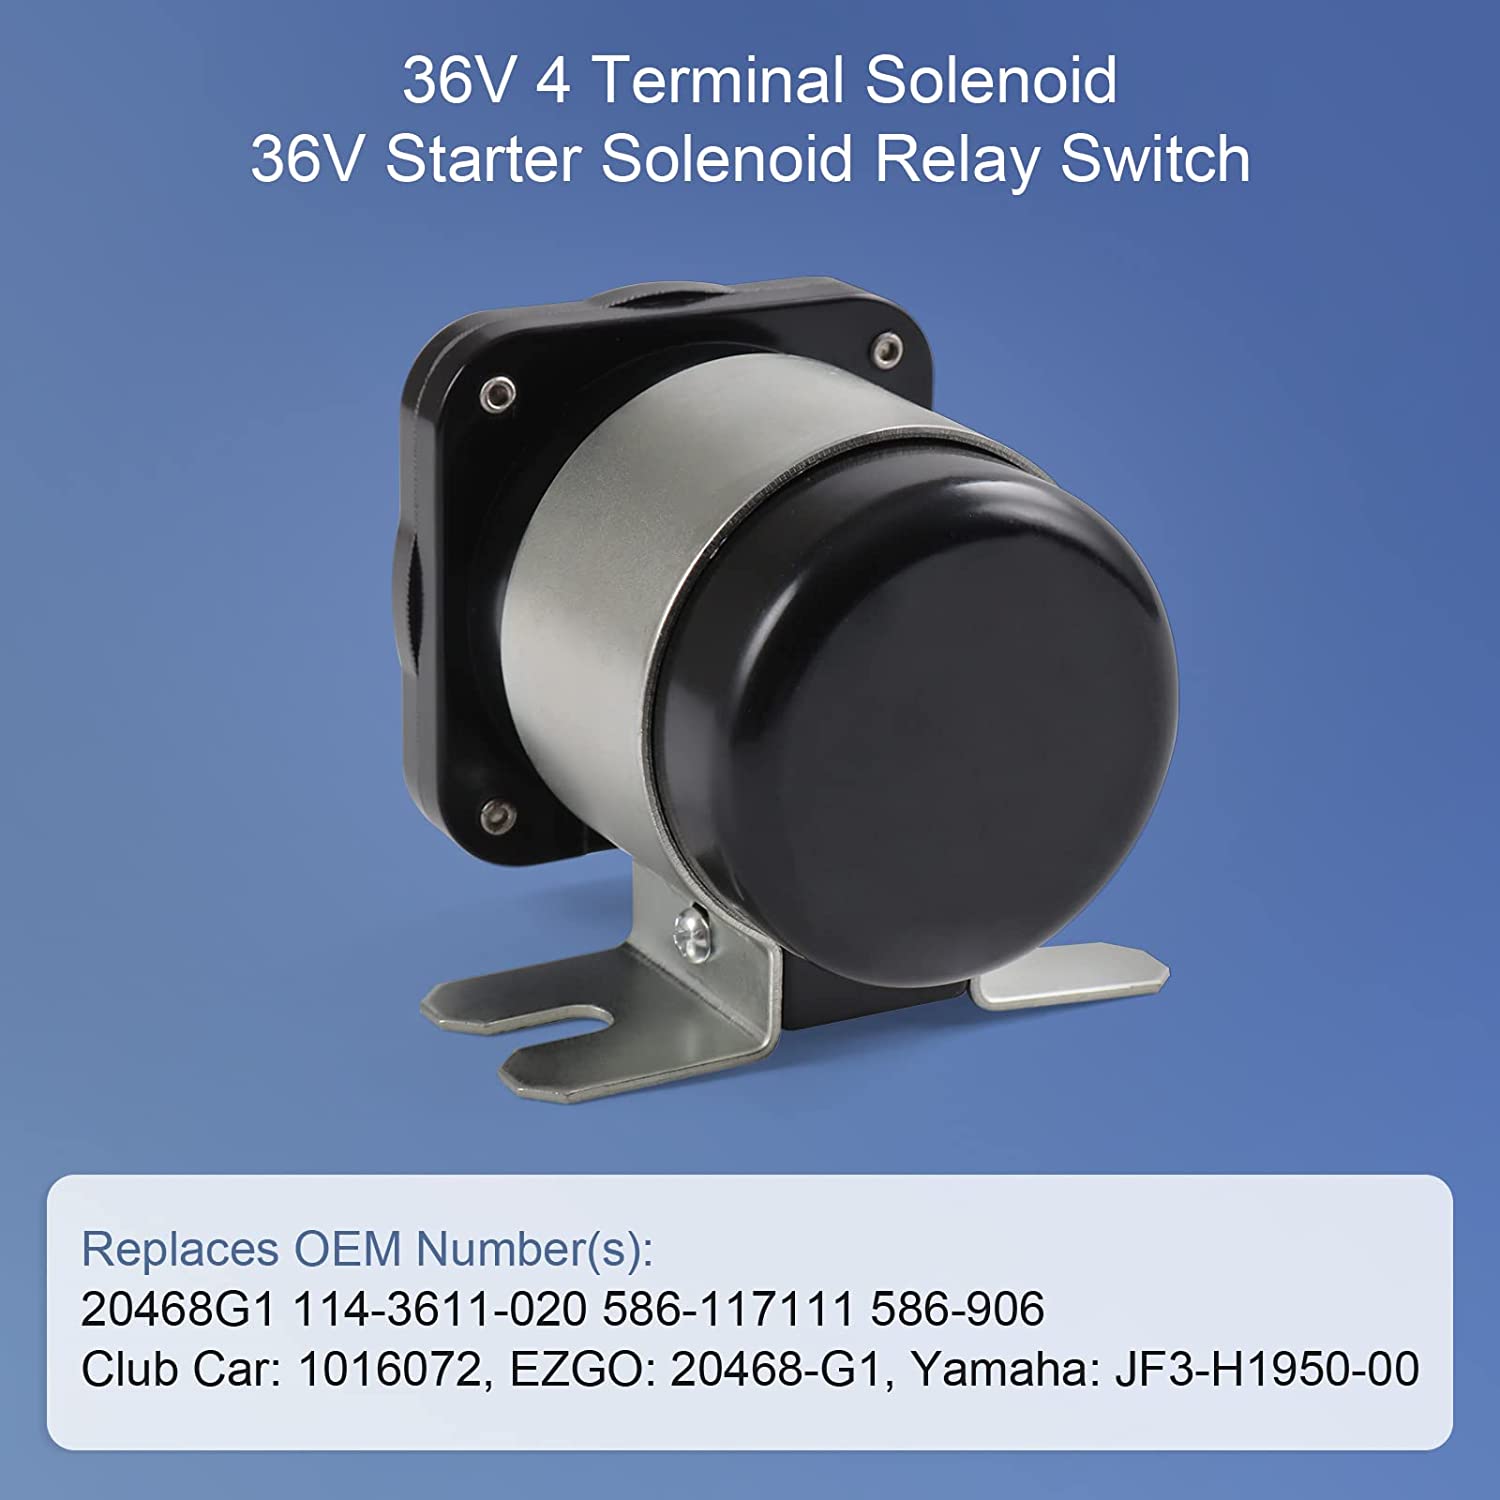 Solenoide de 36 V 4 terminales 20468G1 36 V Solenoide Interruptor